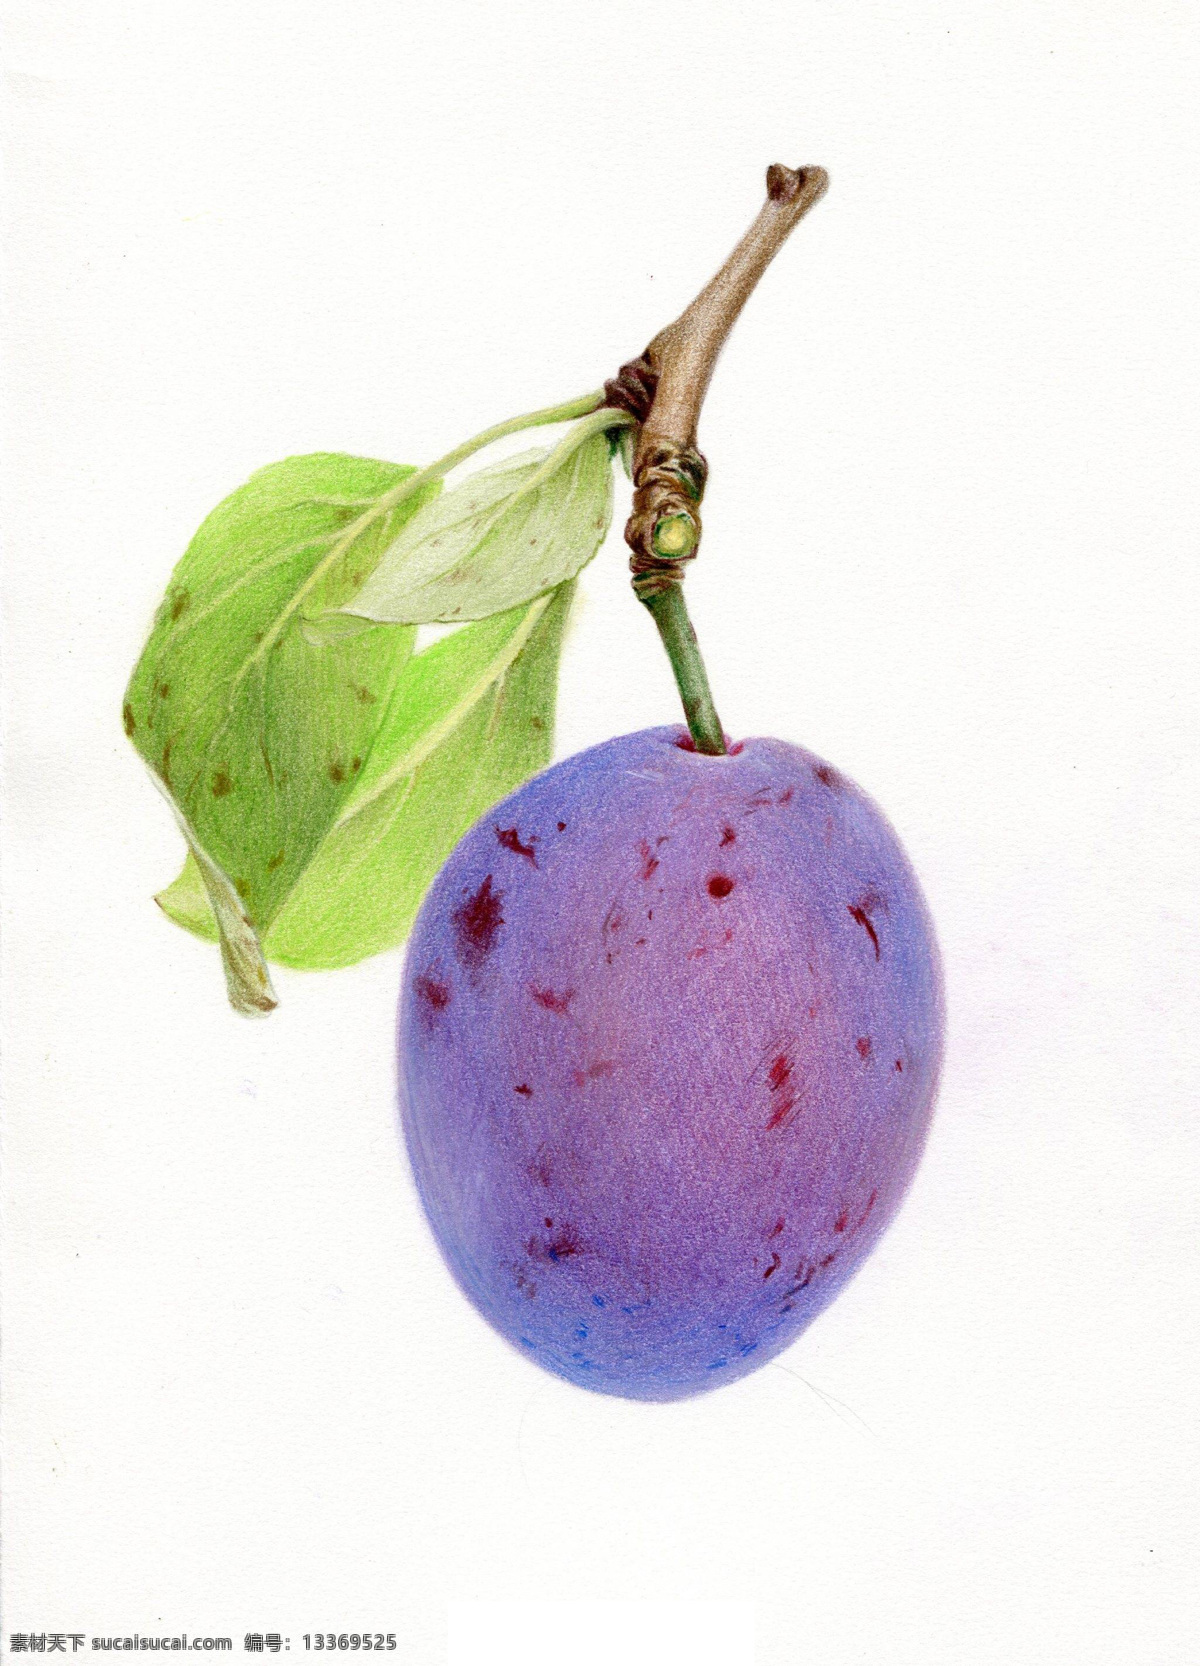 彩 铅 绘画 水果 蓝莓 西瓜 国外 彩铅绘画 水彩 水果手绘 临摹 彩铅水果 手绘教程 水果插画 精美绘画 食物 文化艺术 绘画书法